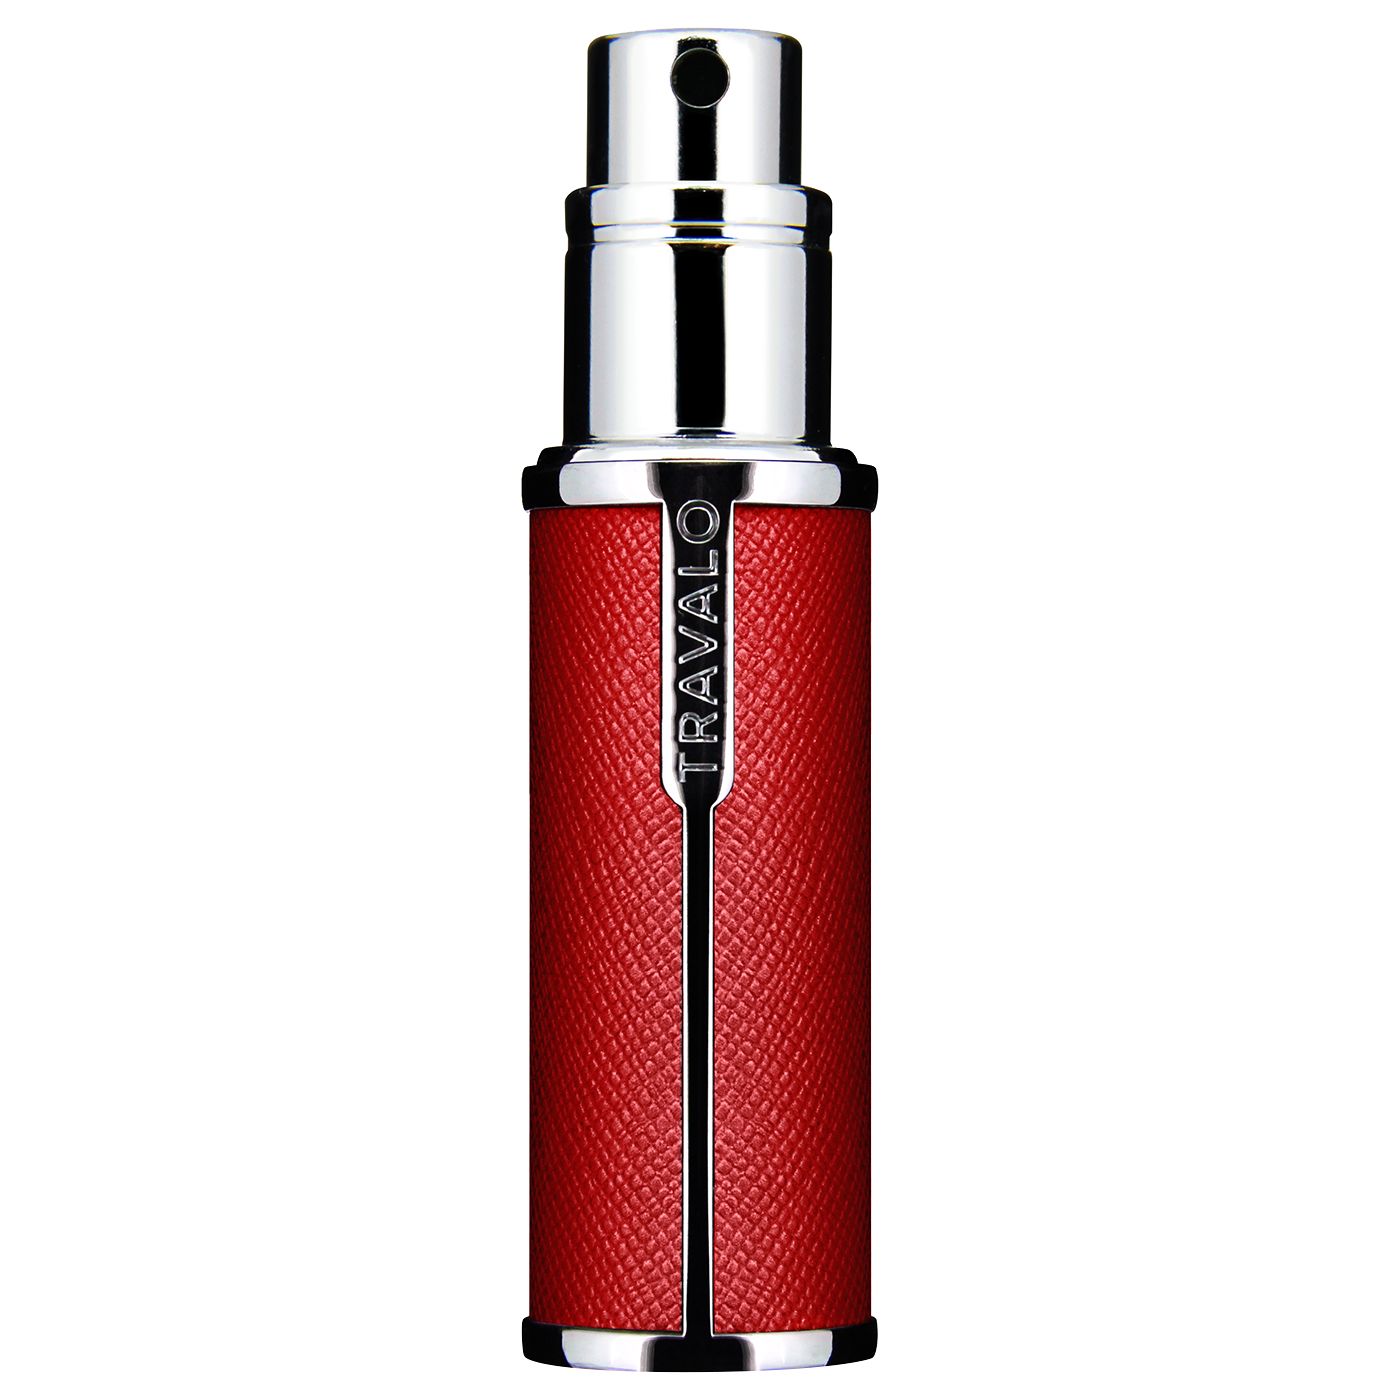 Travalo Milano Refillable Perfume Atomiser Spray, Red 2